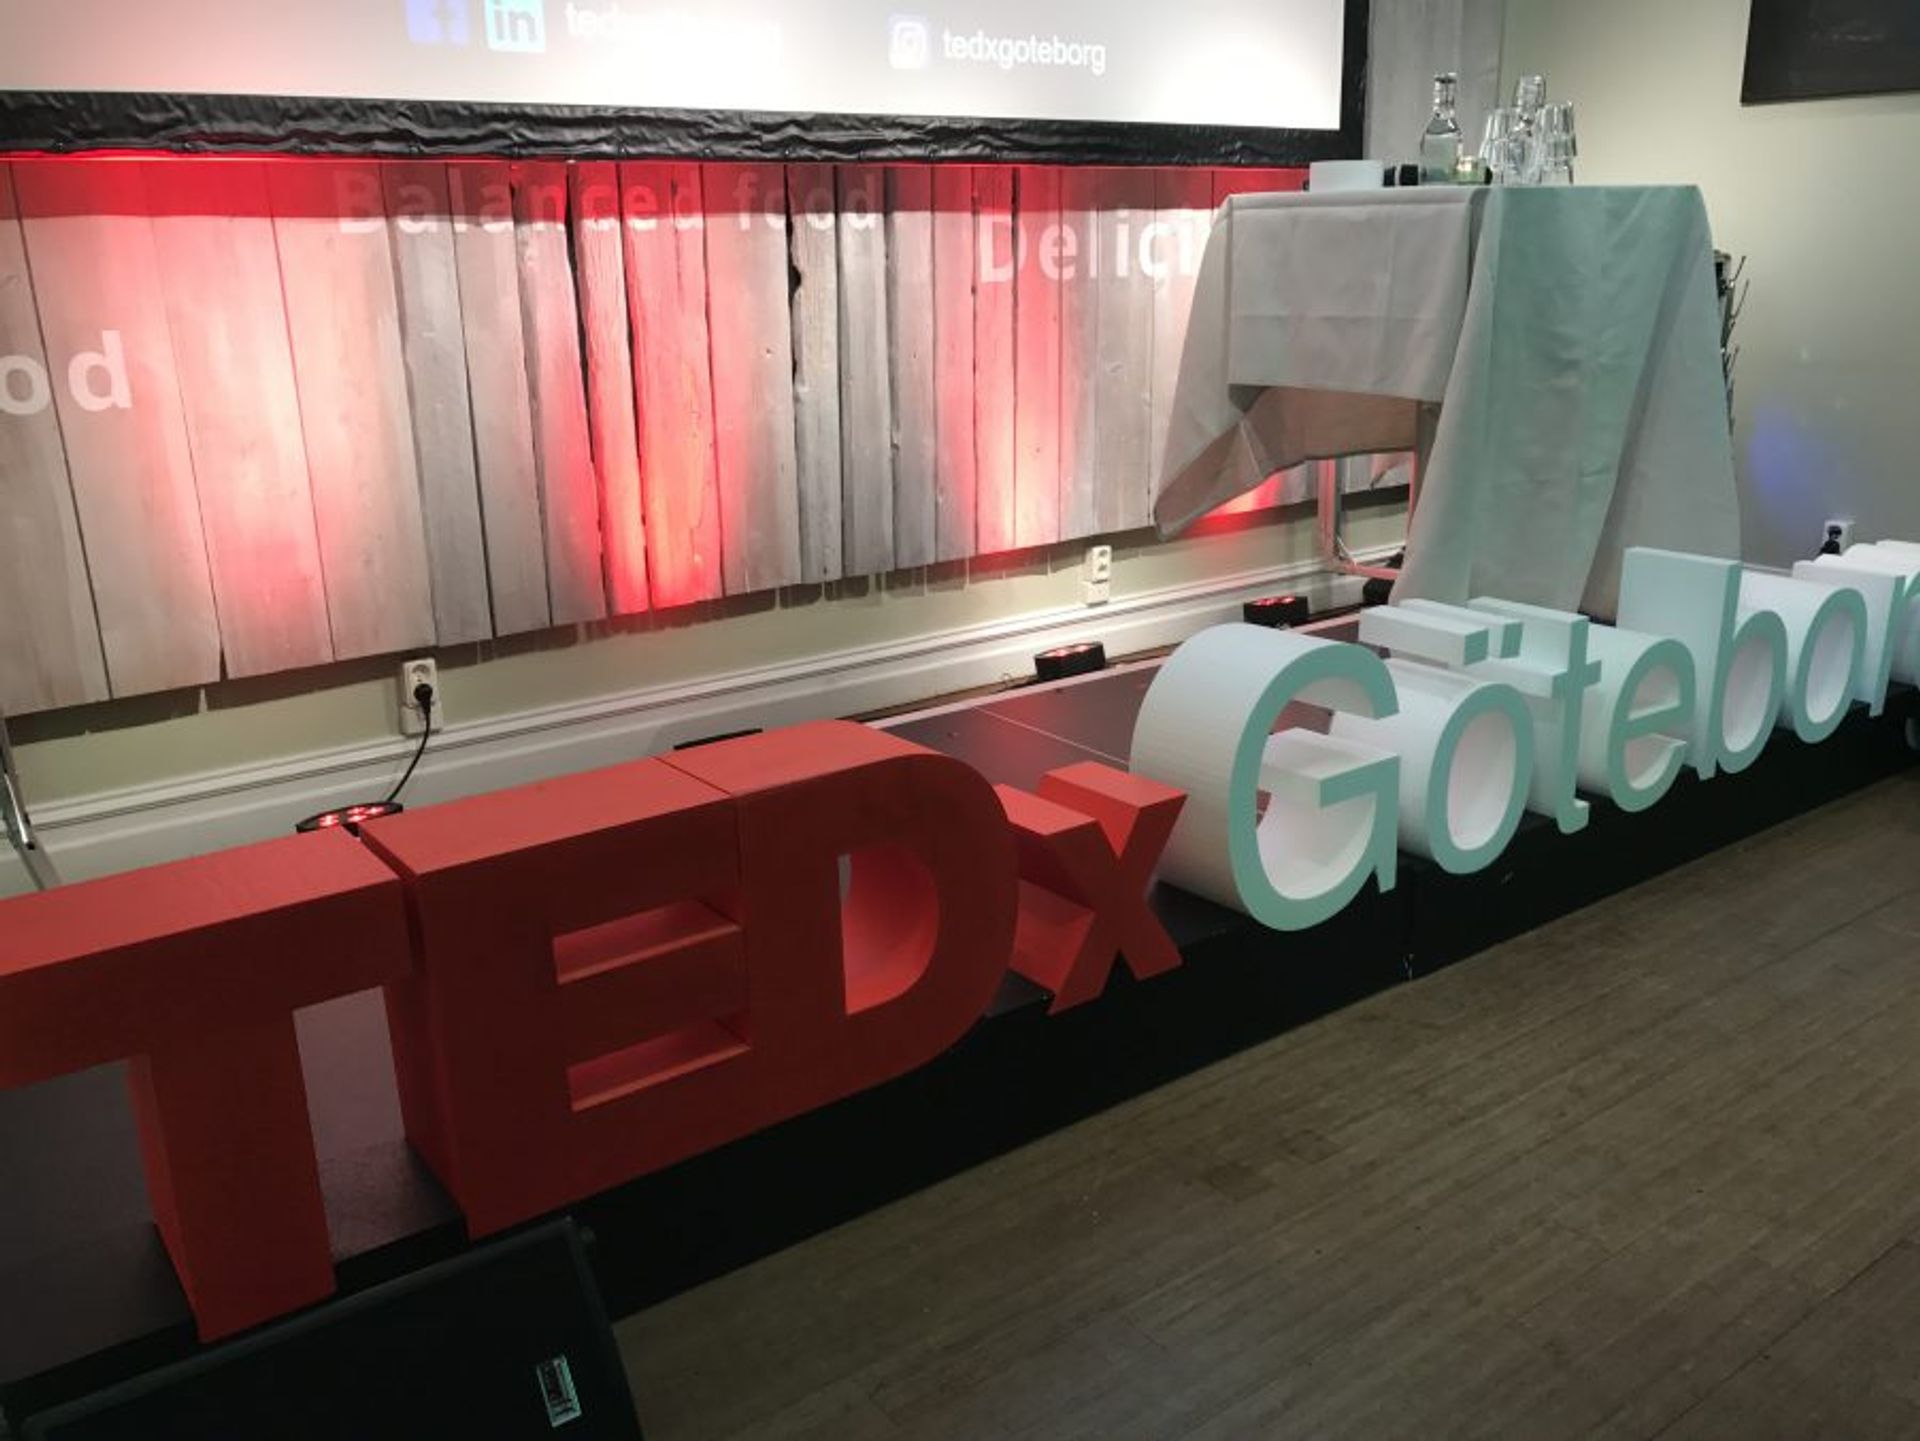 TEDX Goteborg